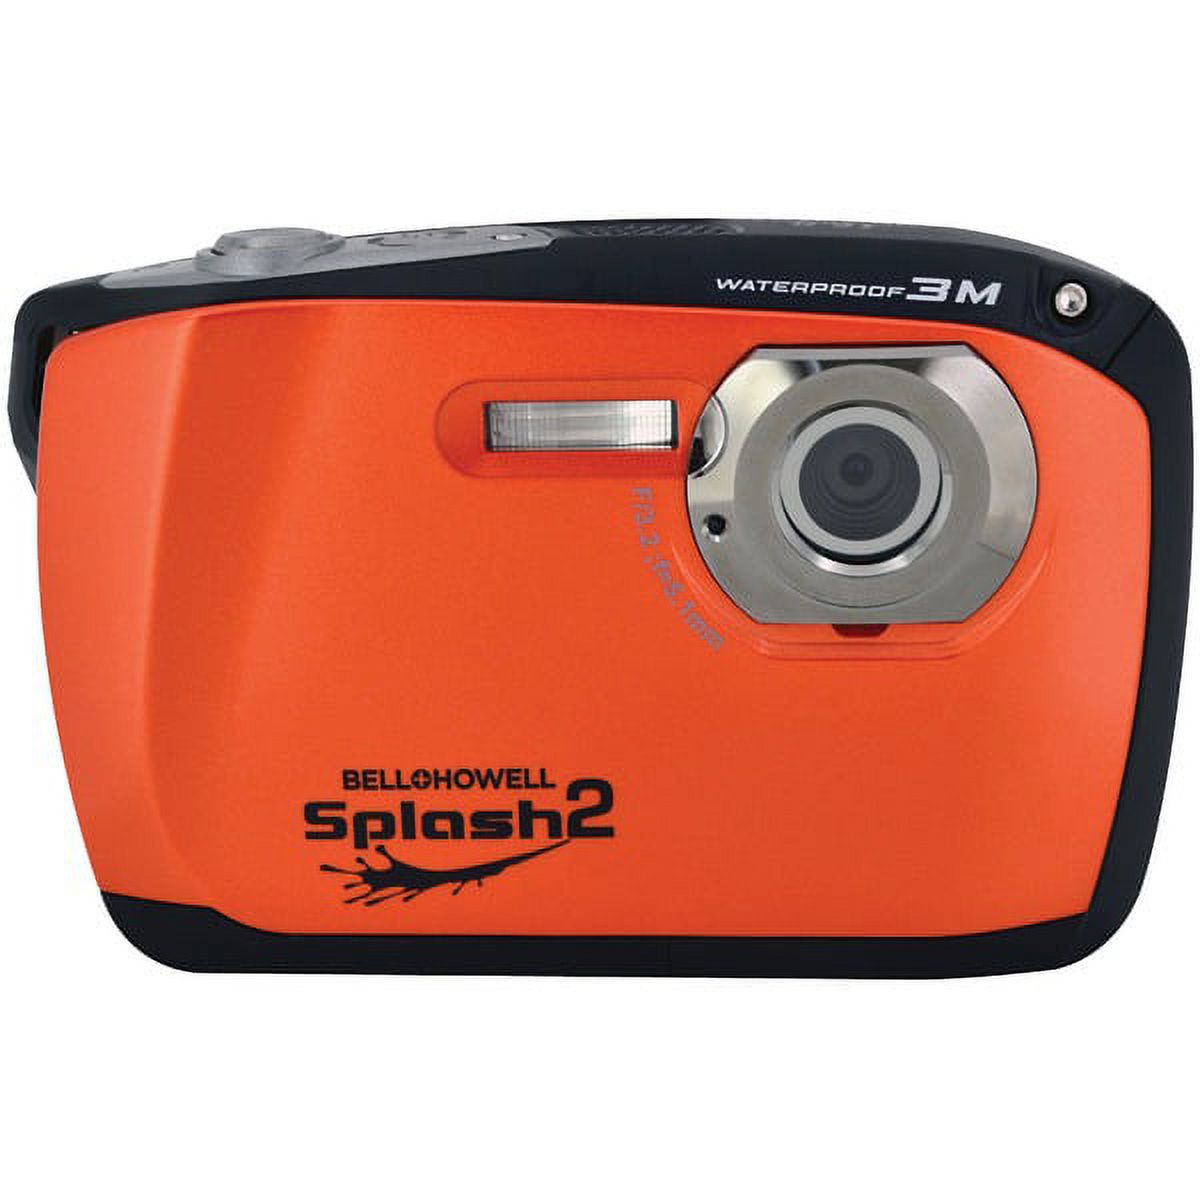 Bell+Howell Orange Splash2 WP16 Digital Camera with 16 Megapixels and 4x Digital Zoom - image 1 of 3